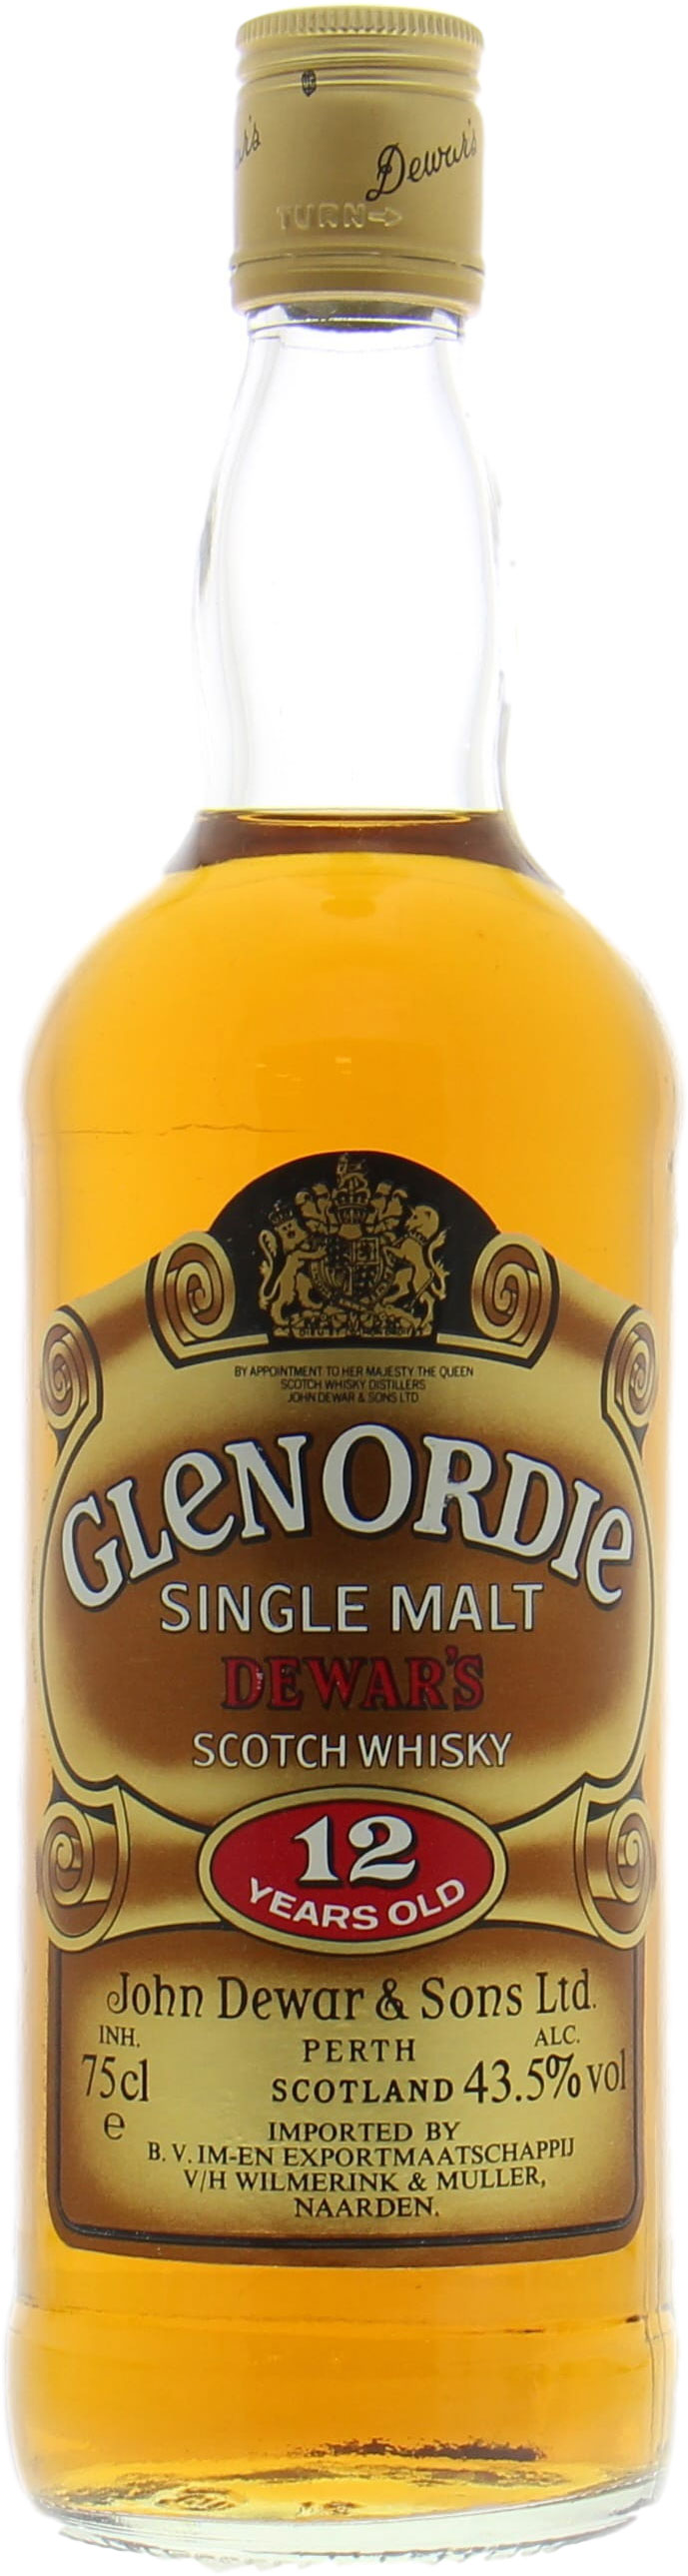 Glen Ord - 12 Years Old Glenordie 43.5% NV